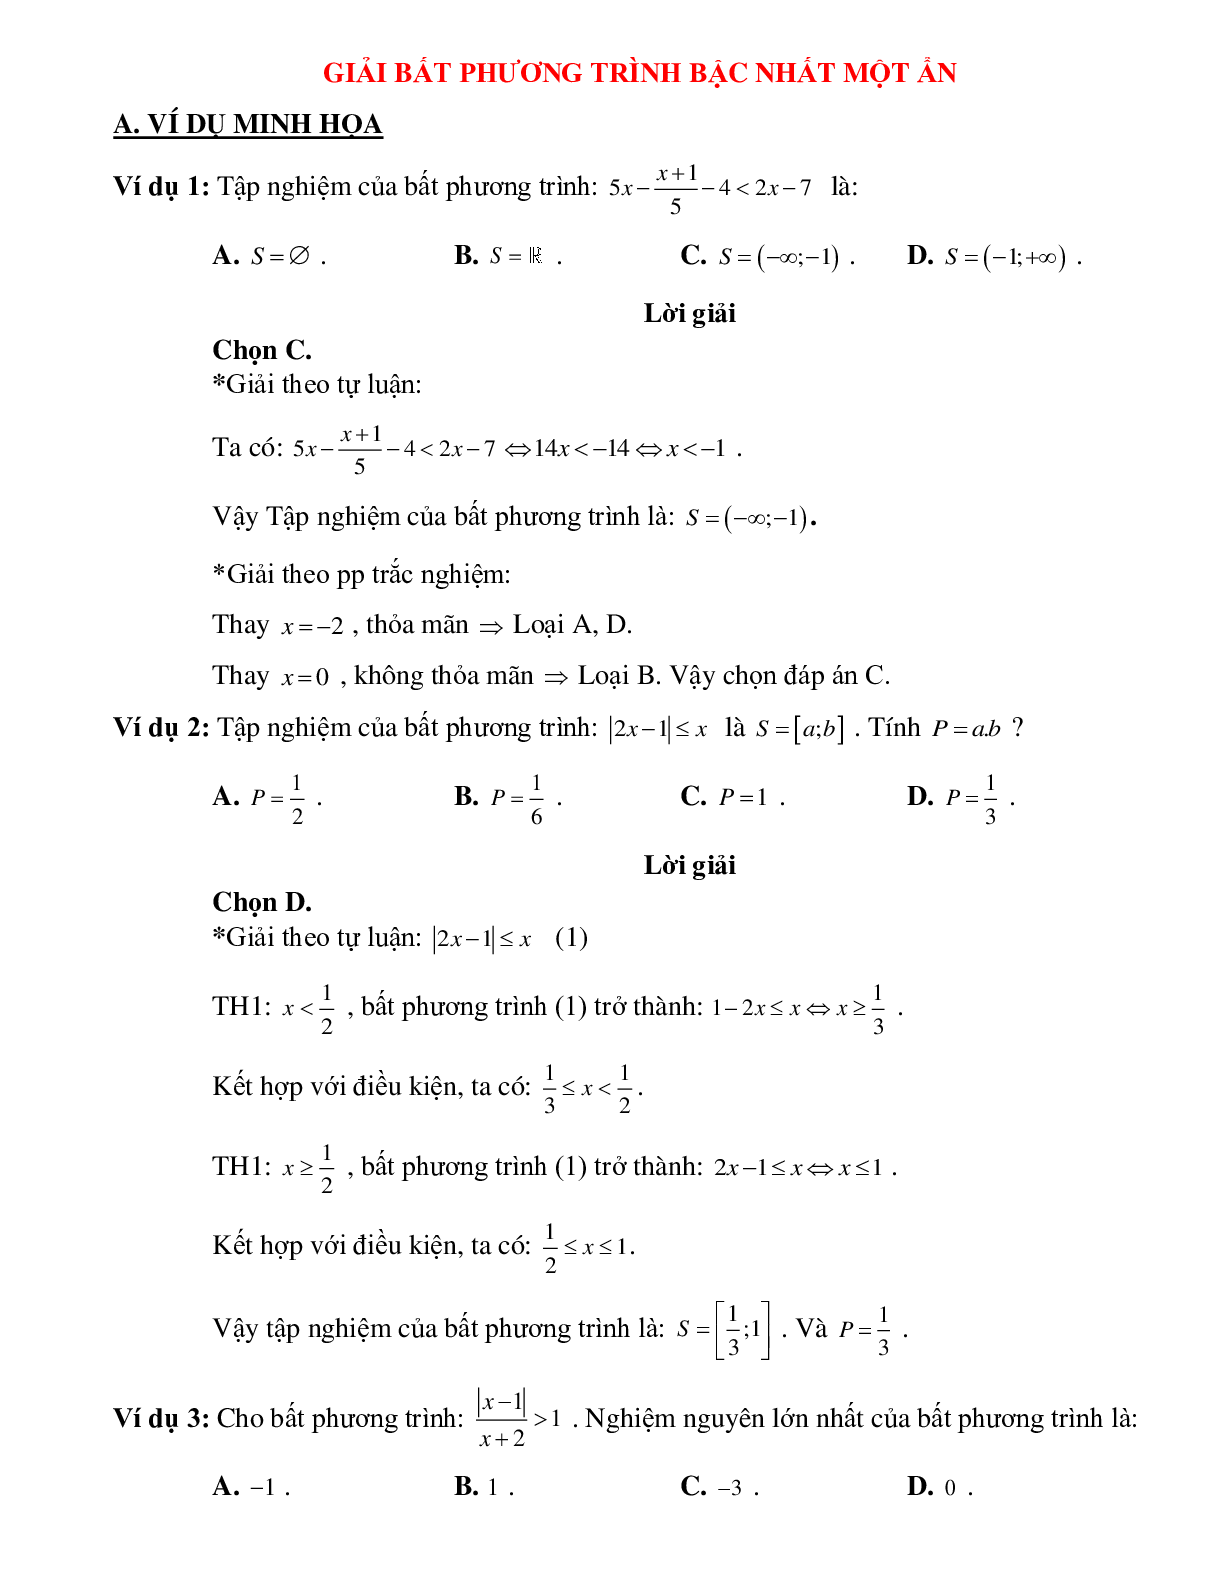 Bài tập giải bất phương trình bậc nhất một ẩn Toán 10 (trang 1)